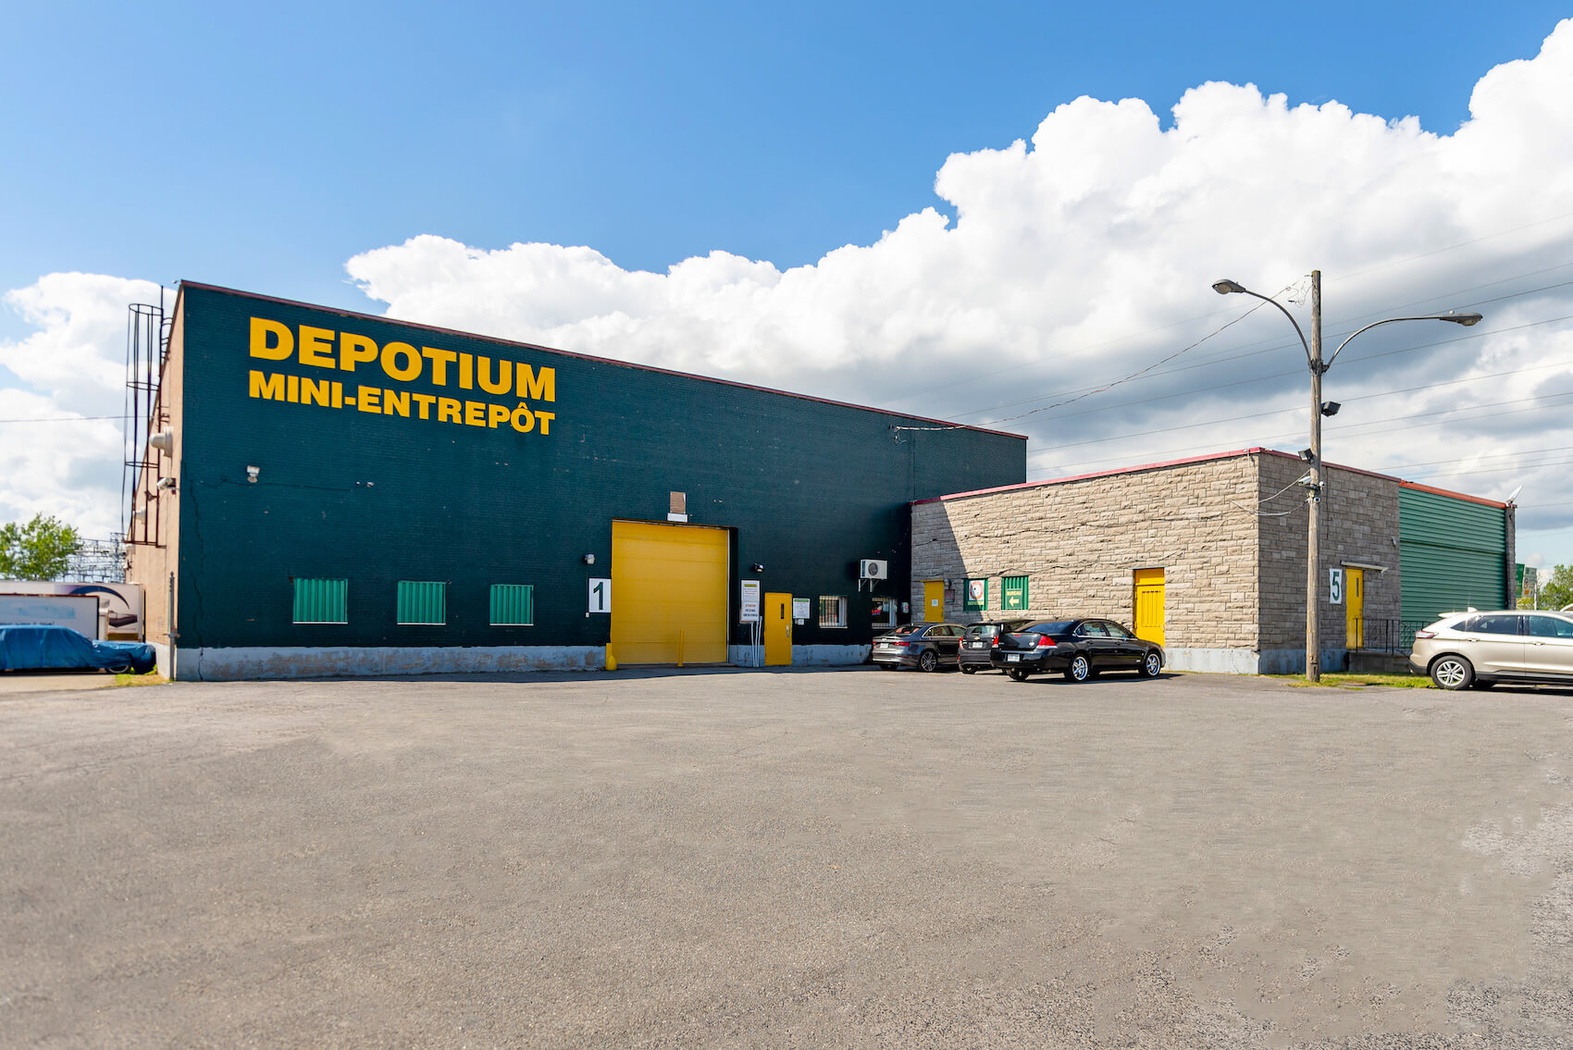 Depotium Mini Entrepôt & VR - Longueuil St-Hubert (450)900-0733